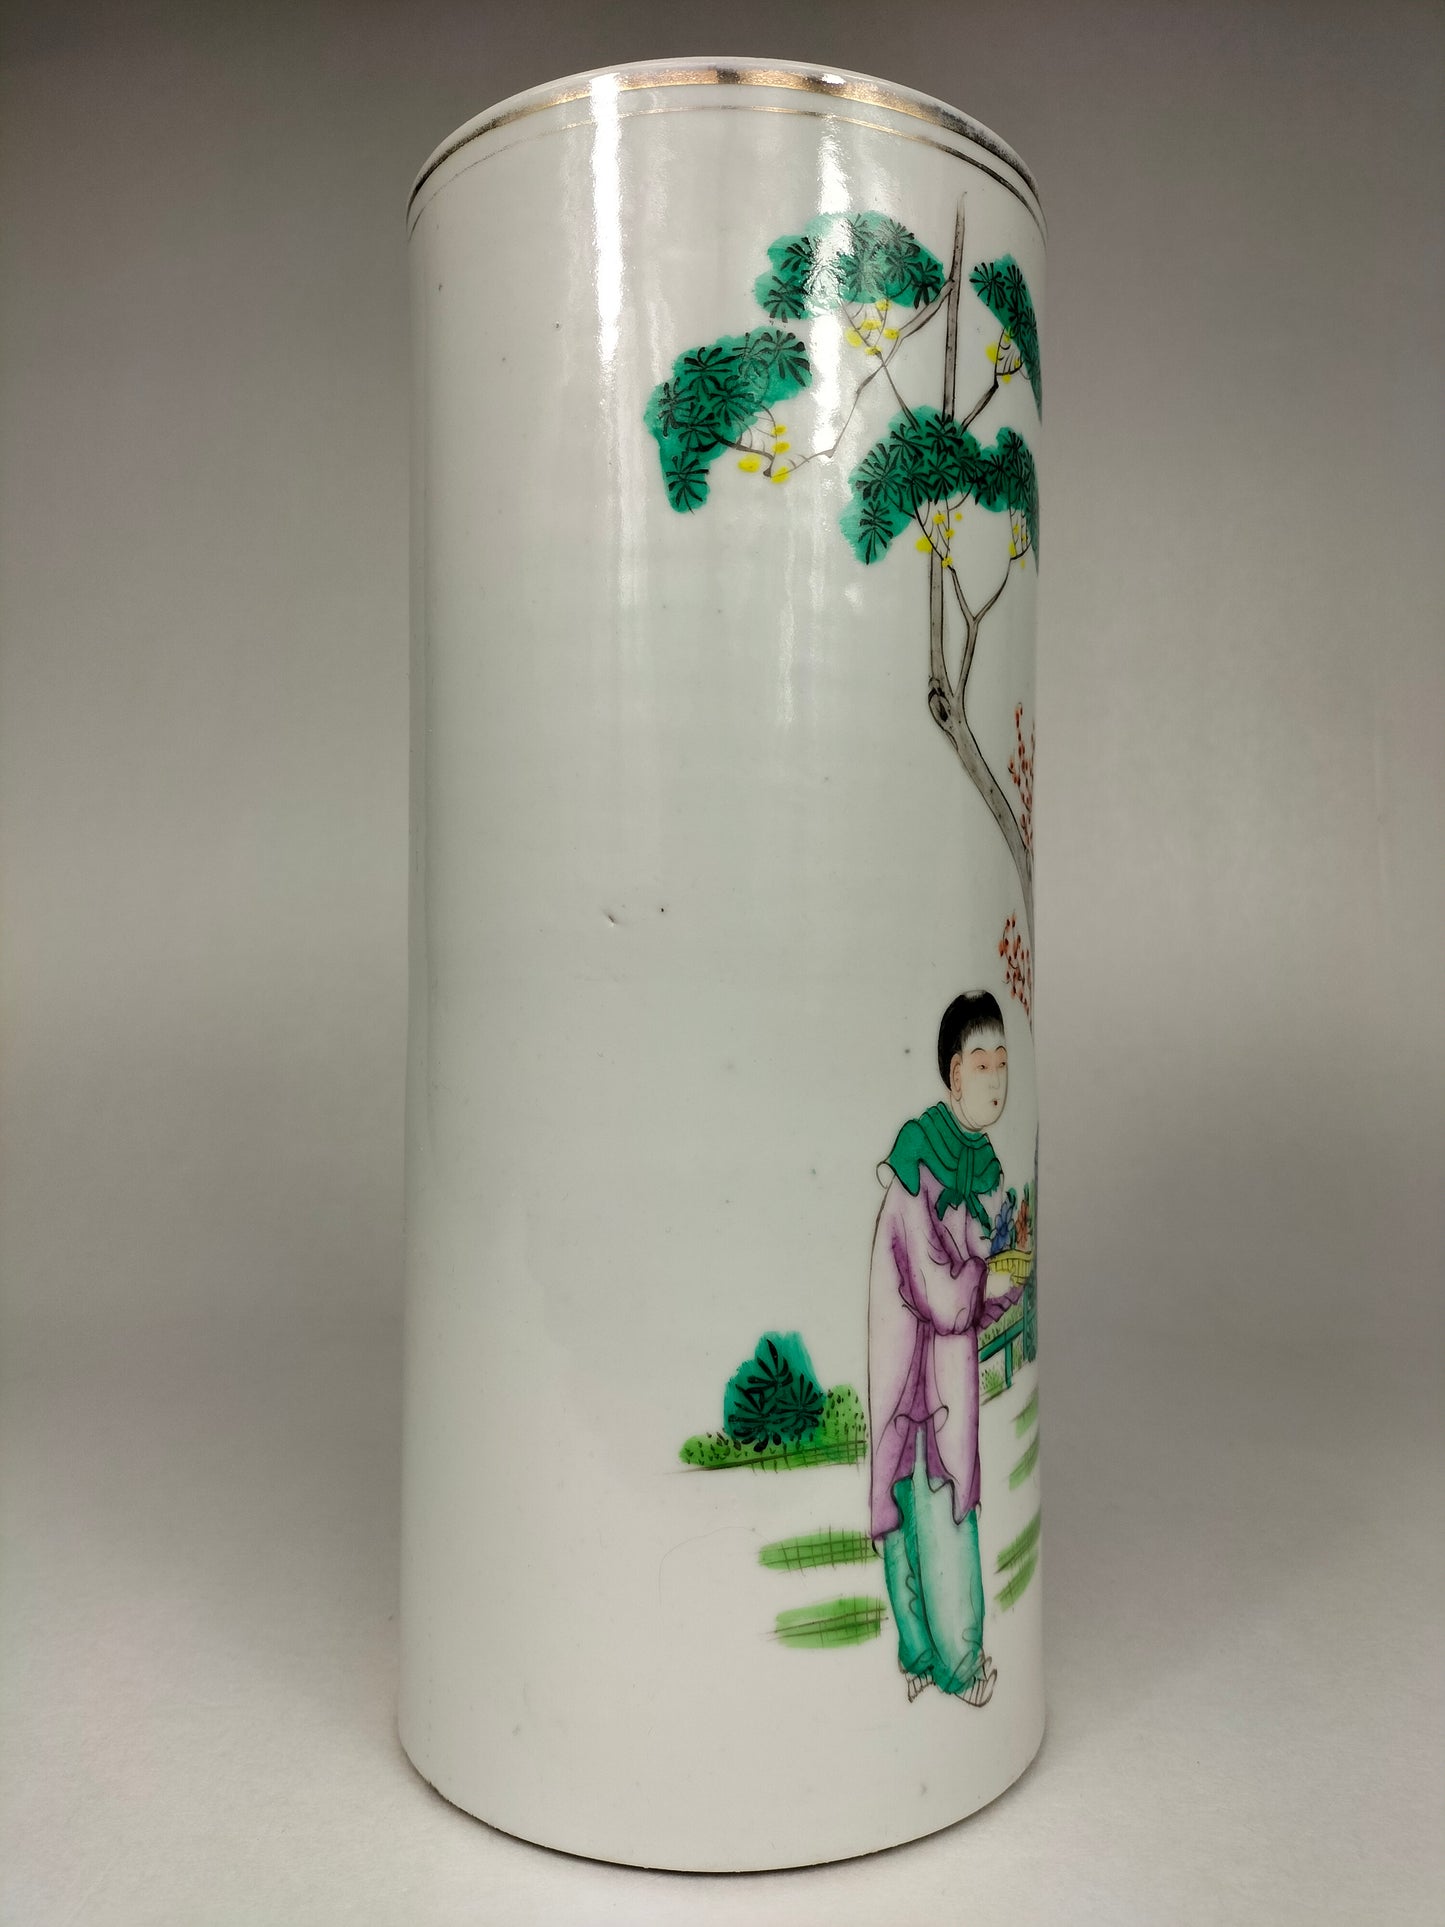 装饰有鼠尾草和儿童的古董中国圆盘花瓶 // 民国时期（1912-1949）